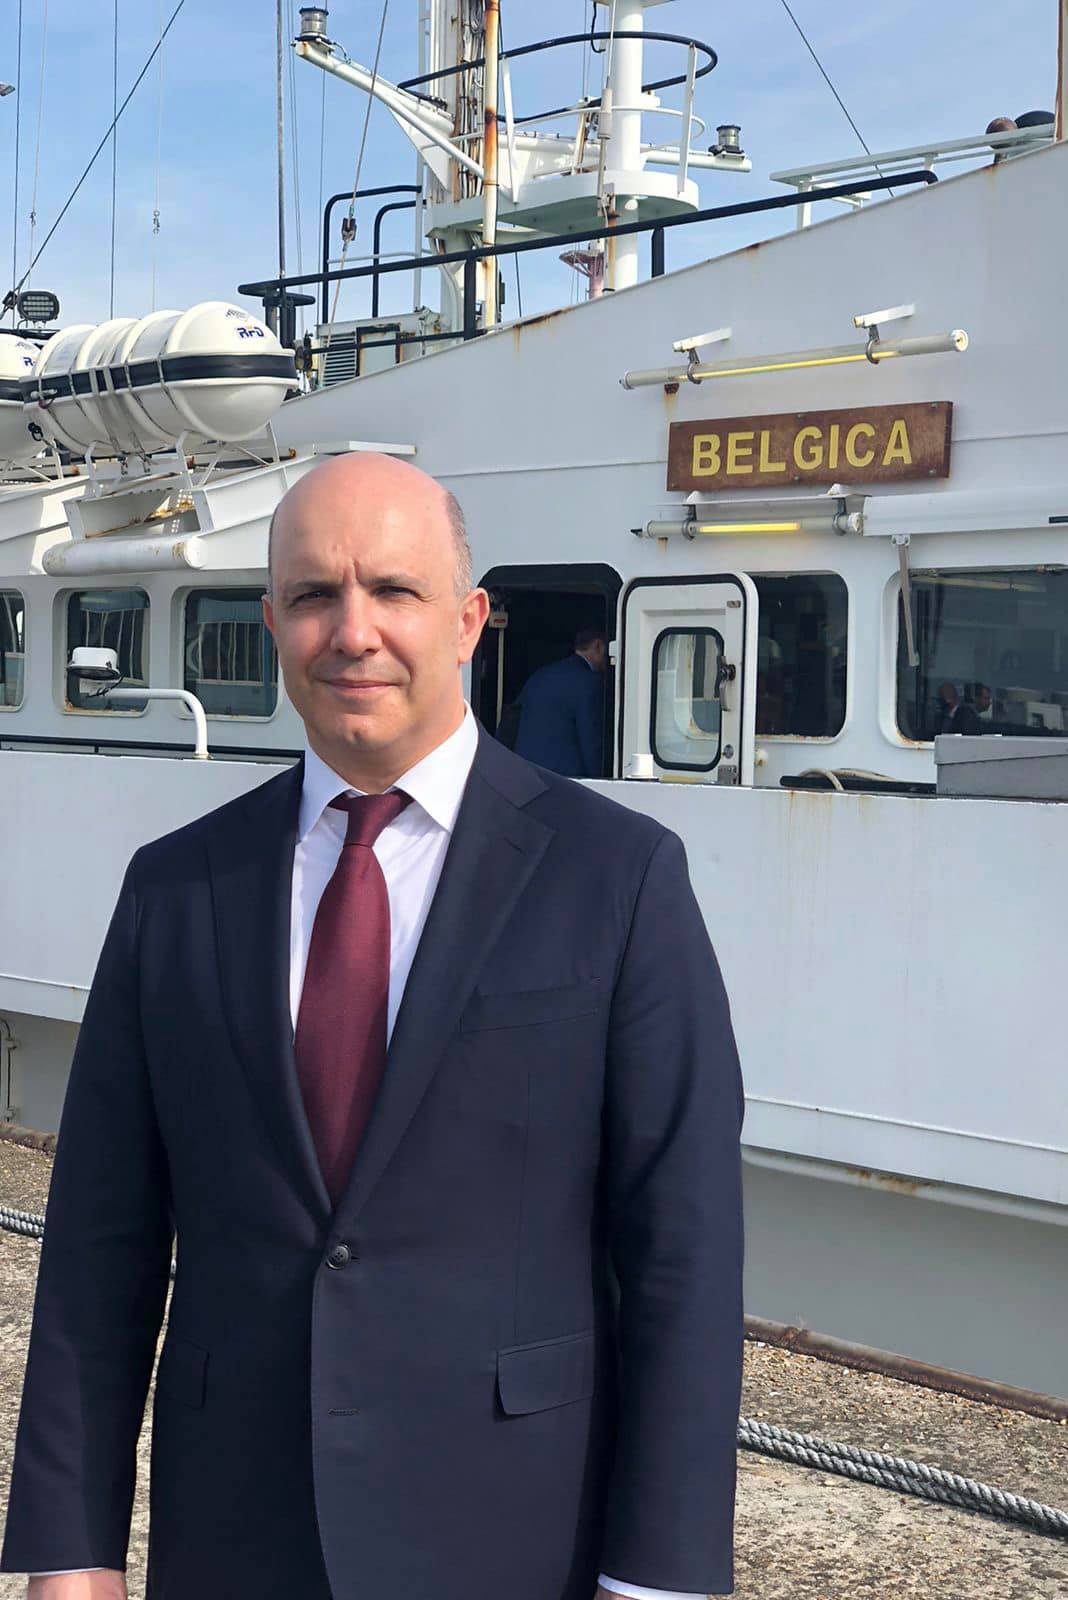 Бельгия передала Украине легендарное научно-исследовательское судно: фото